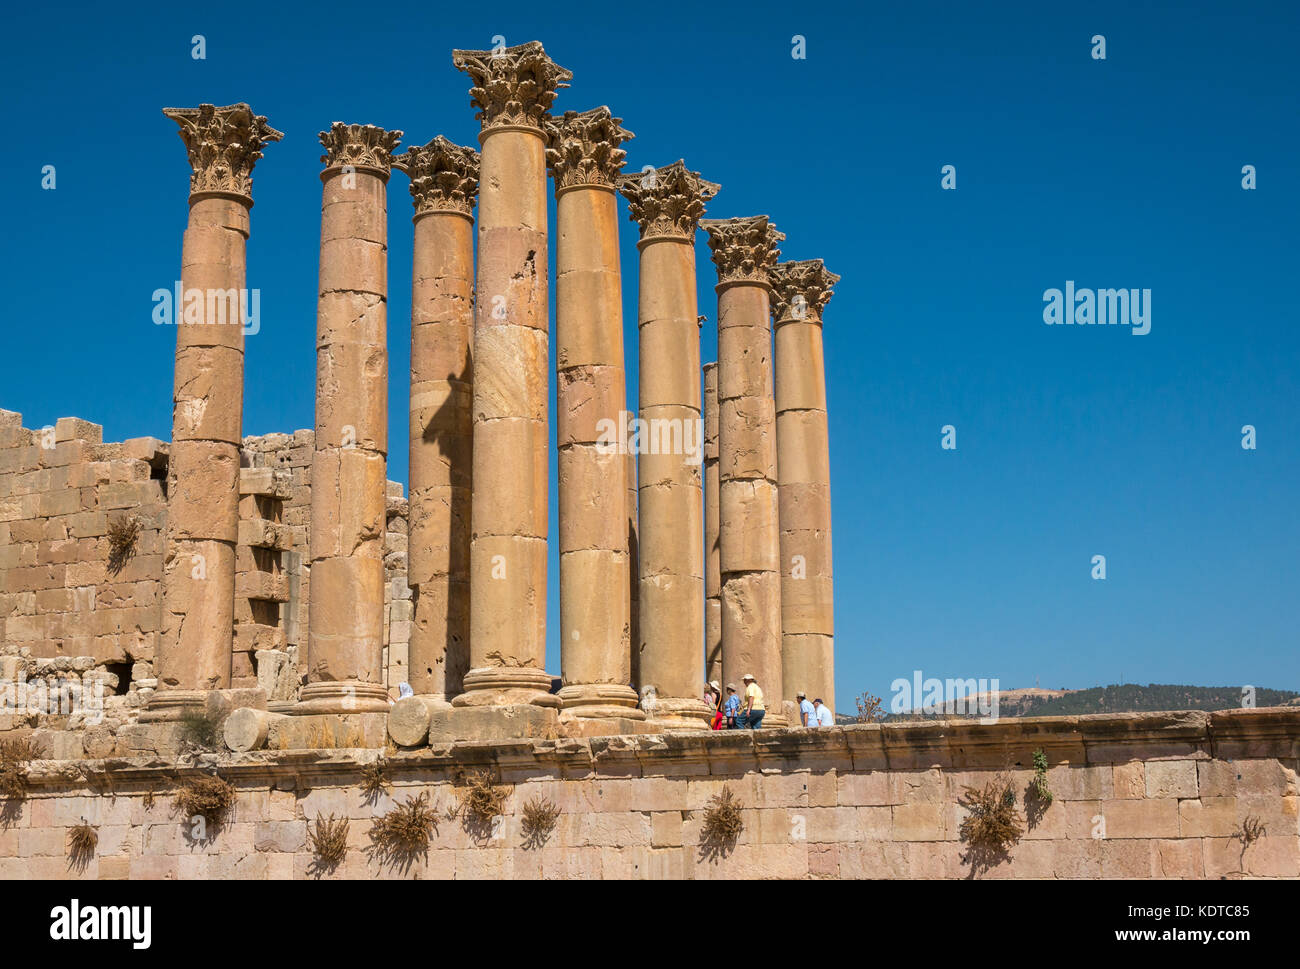 Gruppo turistico entrando in Tempio di Artemide nella città romana di Jerash, antica Gerasa, sito archeologico in Giordania, Medio Oriente Foto Stock